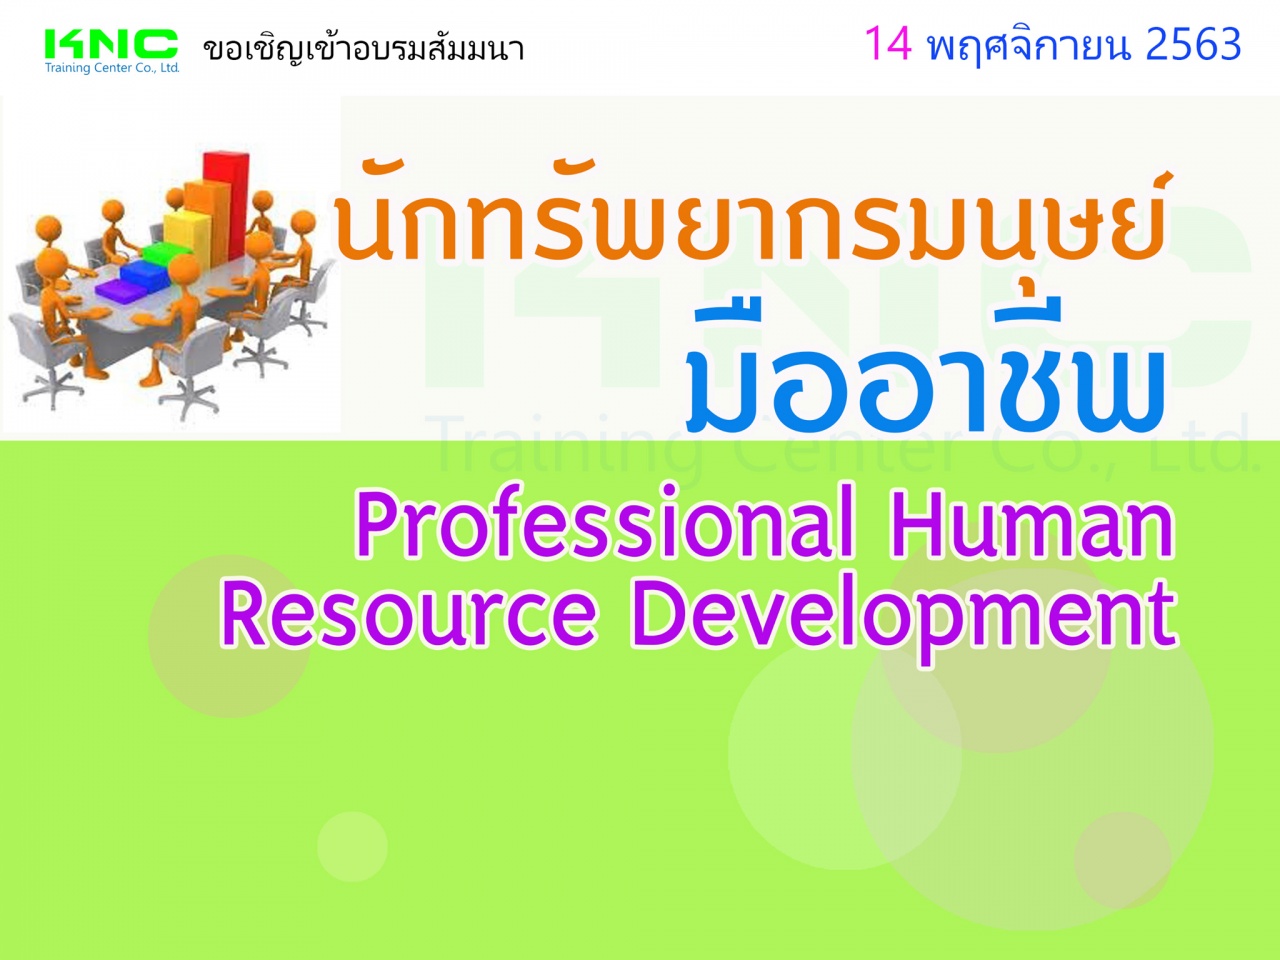 นักทรัพยากรมนุษย์มืออาชีพ (Professional Human Resource Development)